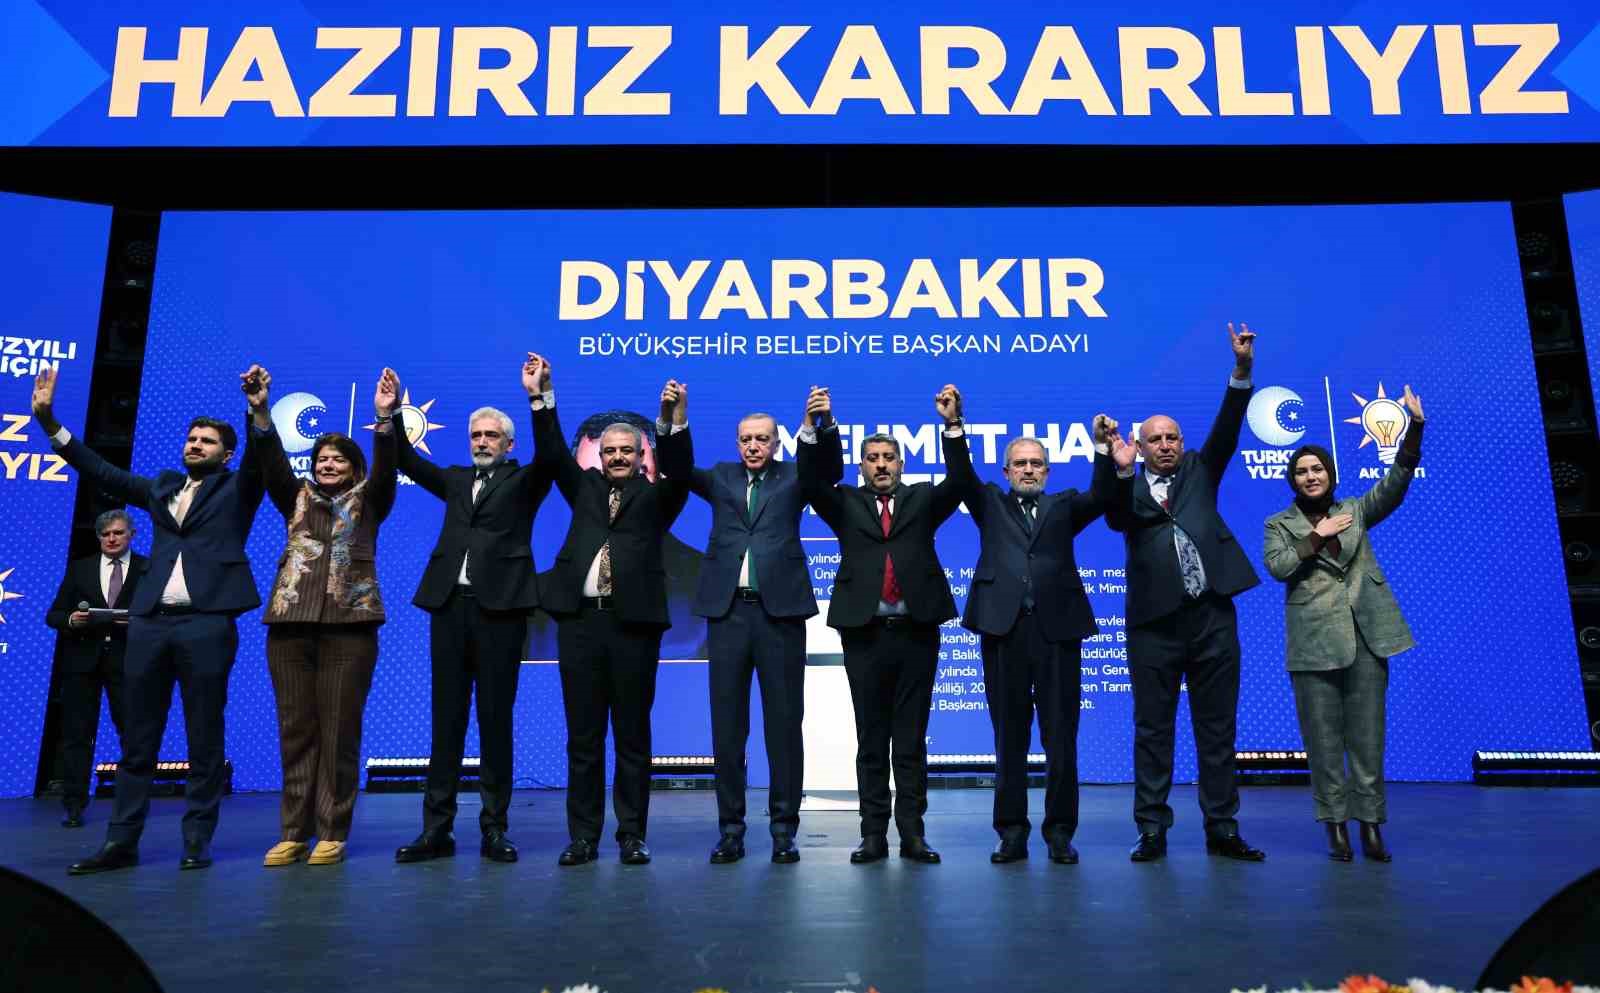 AK Parti, Diyarbakır Büyükşehir Belediye Başkan Adayı olarak Mehmet Halis Bilden’i seçti.